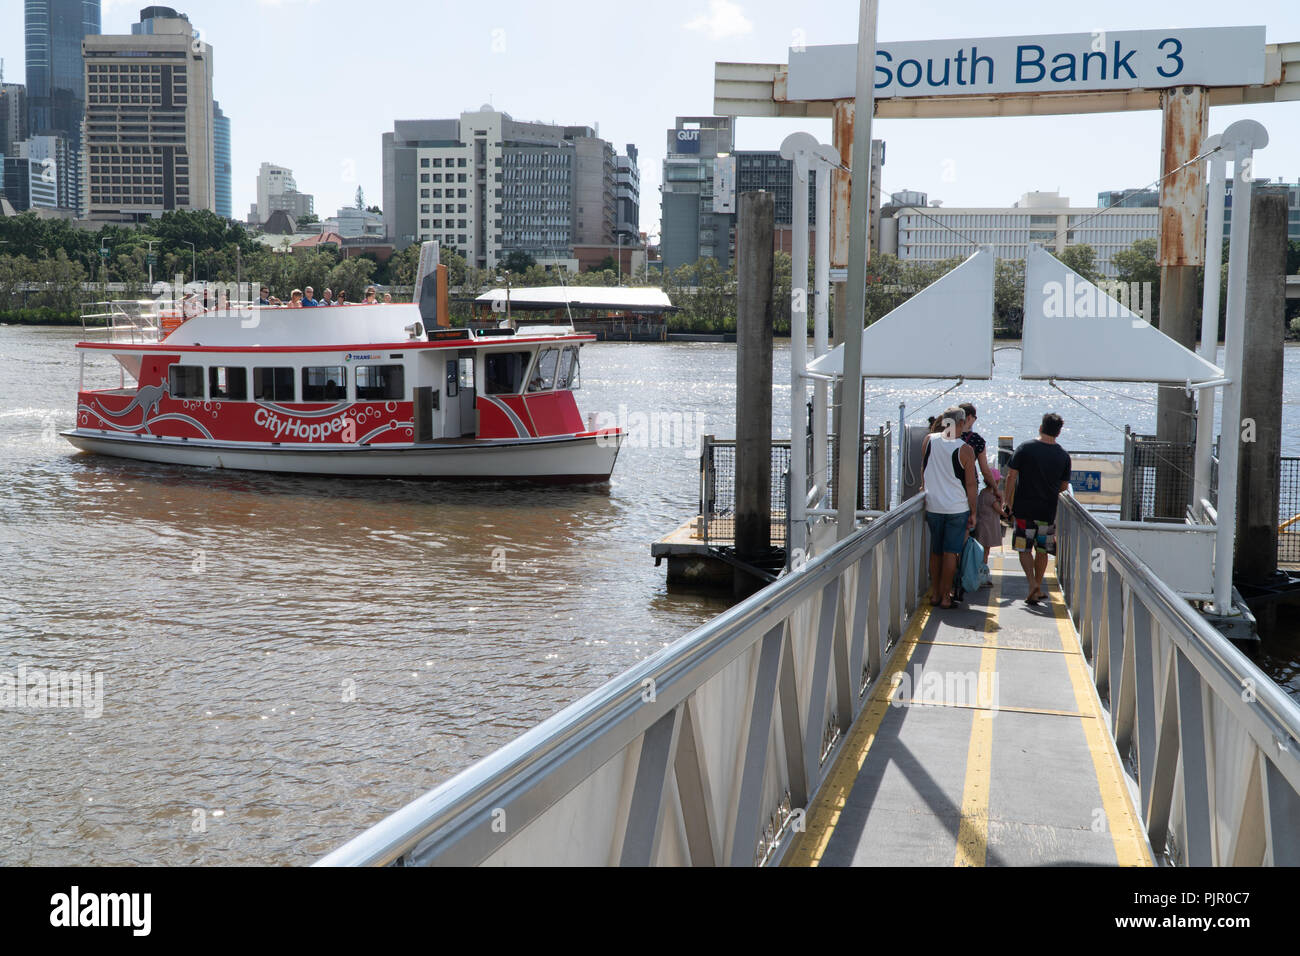 Une ville Hopper ferry part pour la Rive Sud 3 jetée sur la rivière Brisbane Banque D'Images